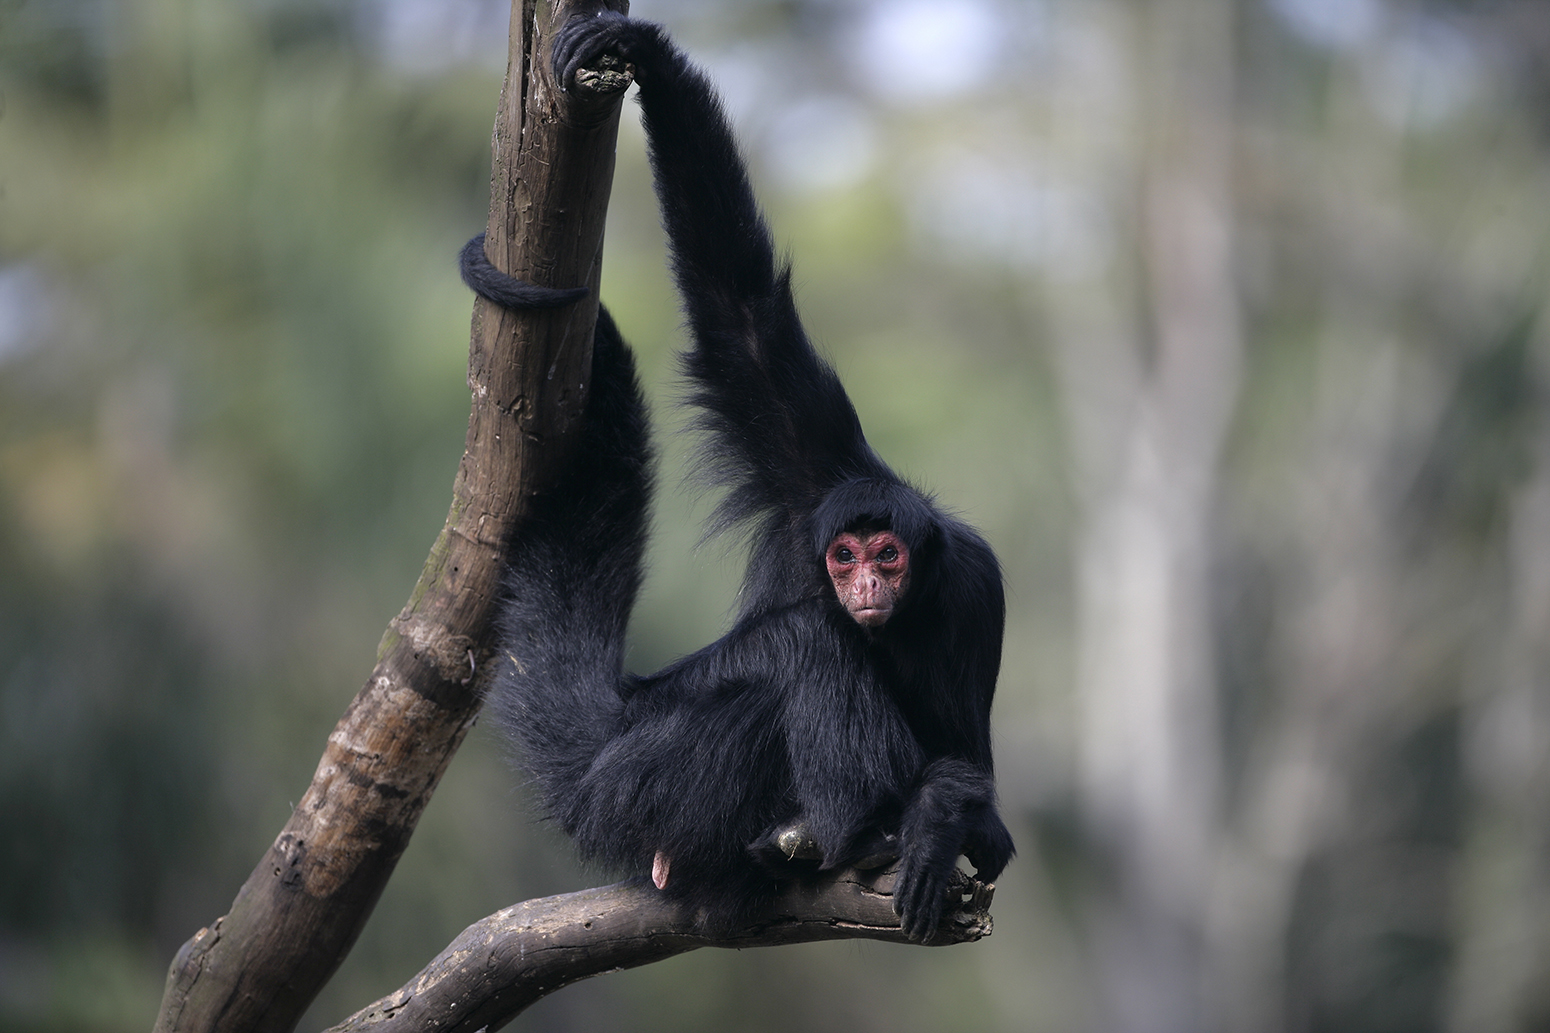 Spider monkey hangs in a forest in Brazil.Credit: Emi/Shutterstock.